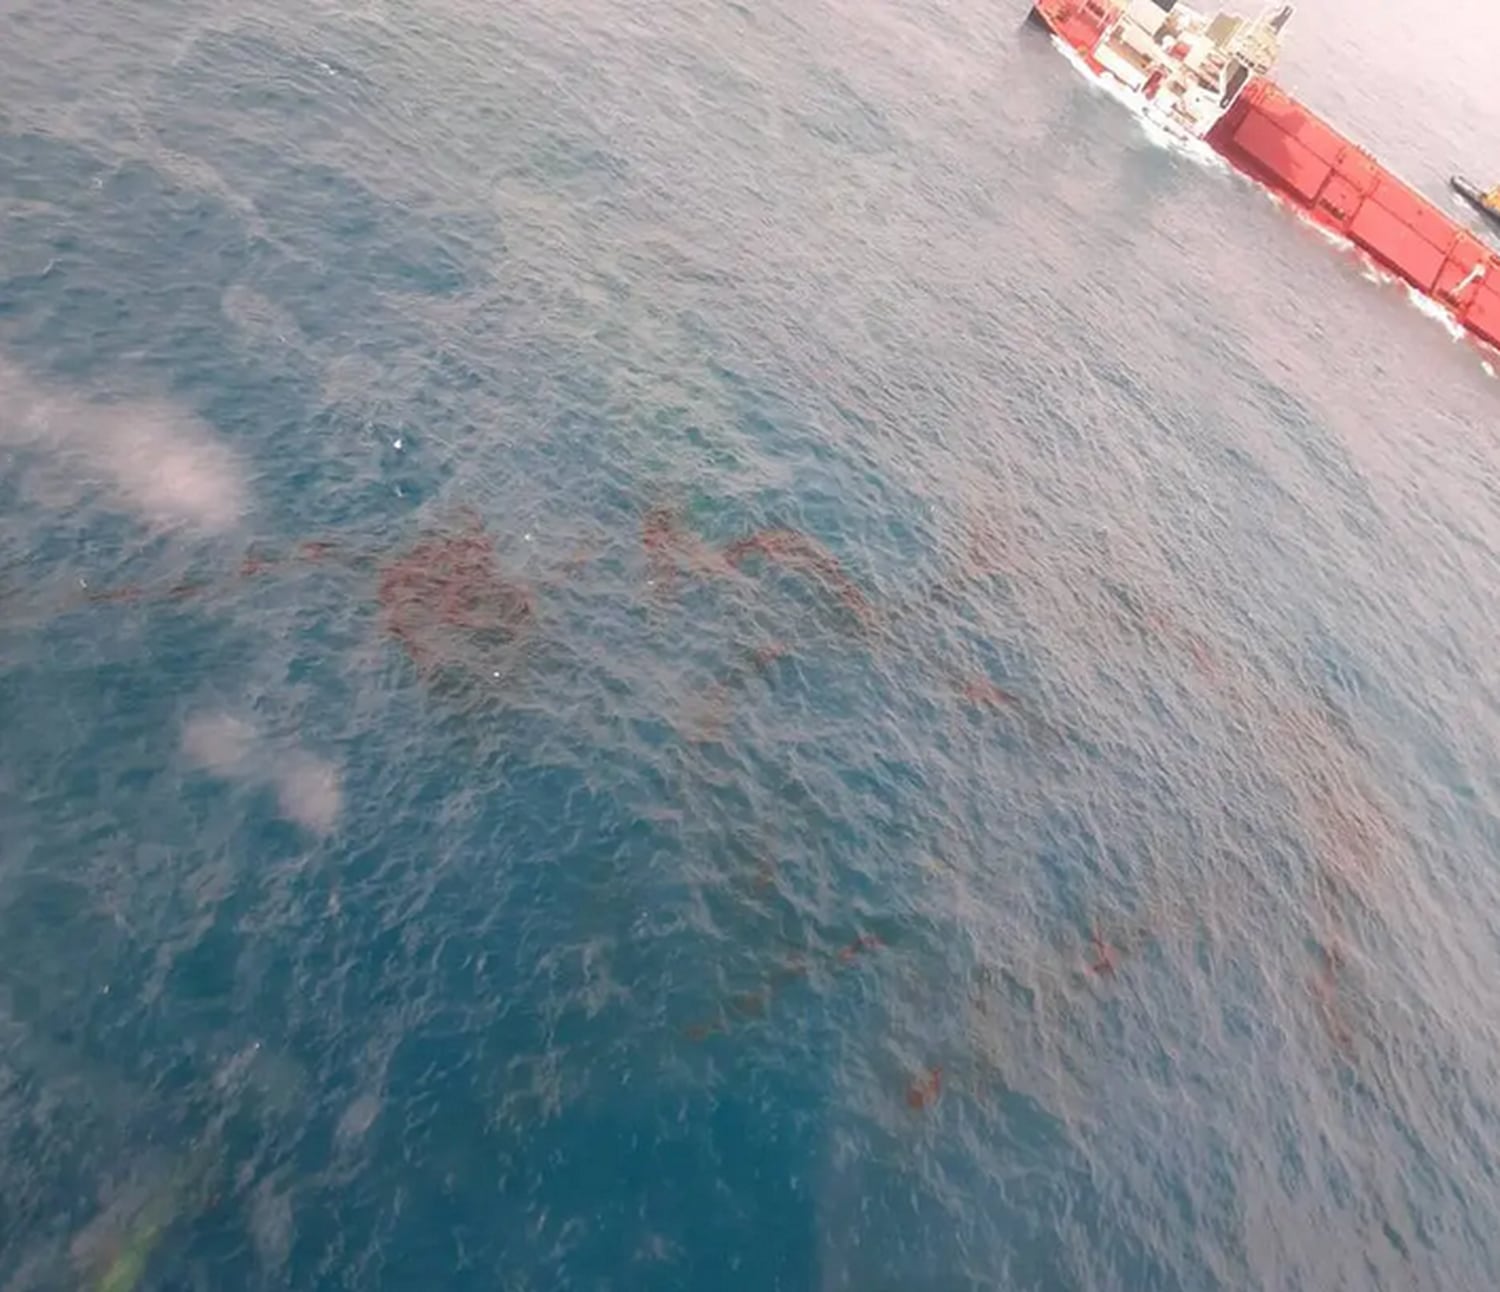 Imagens mostram manchas de óleo ao redor do navio.